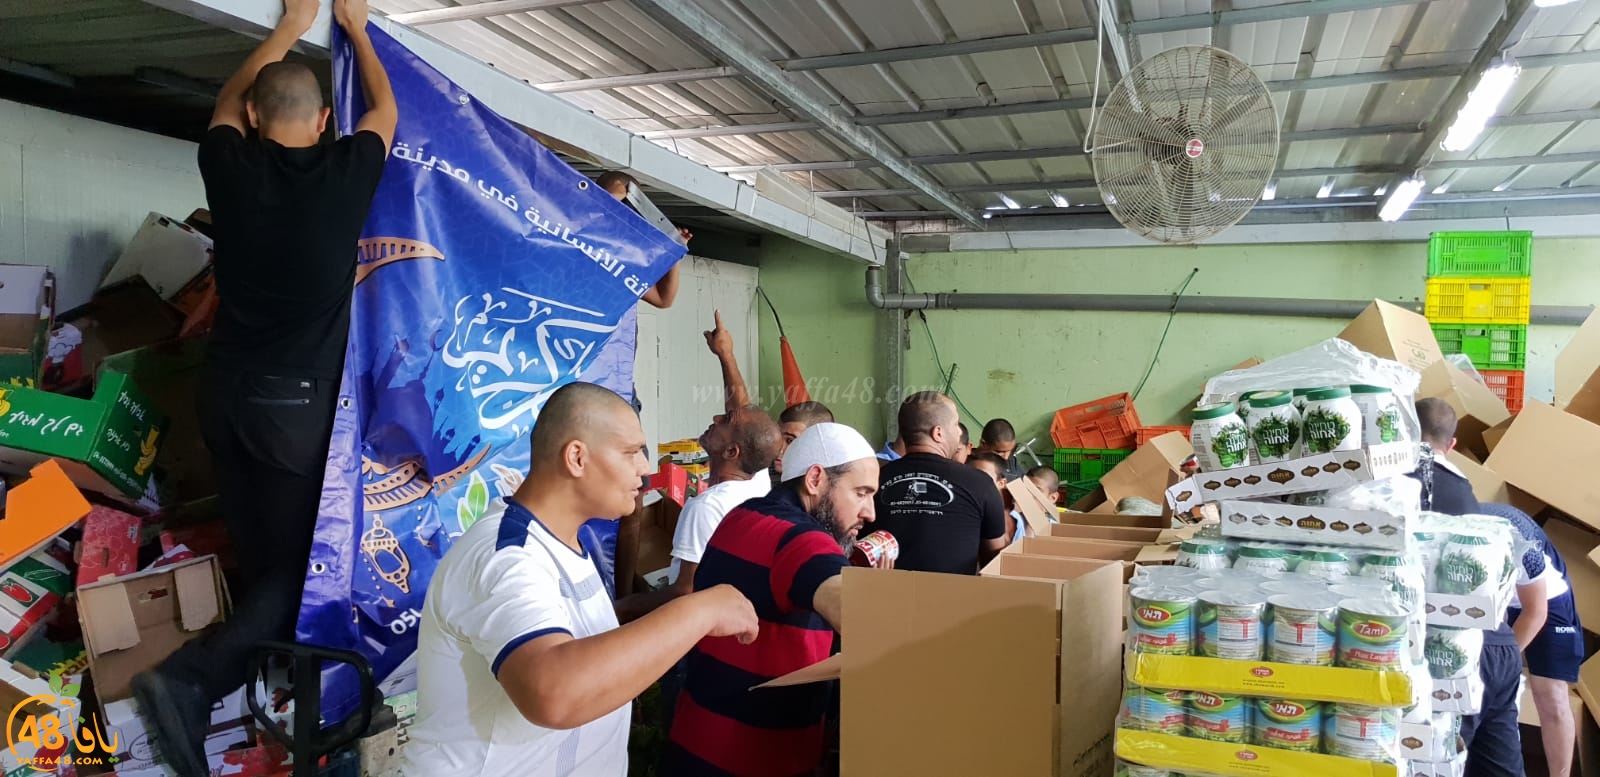 فيديو: جمعية يافا تدعو العائلات لاستلام استحقاقاتها من الطرود الغذائية الآن في سوق يافا